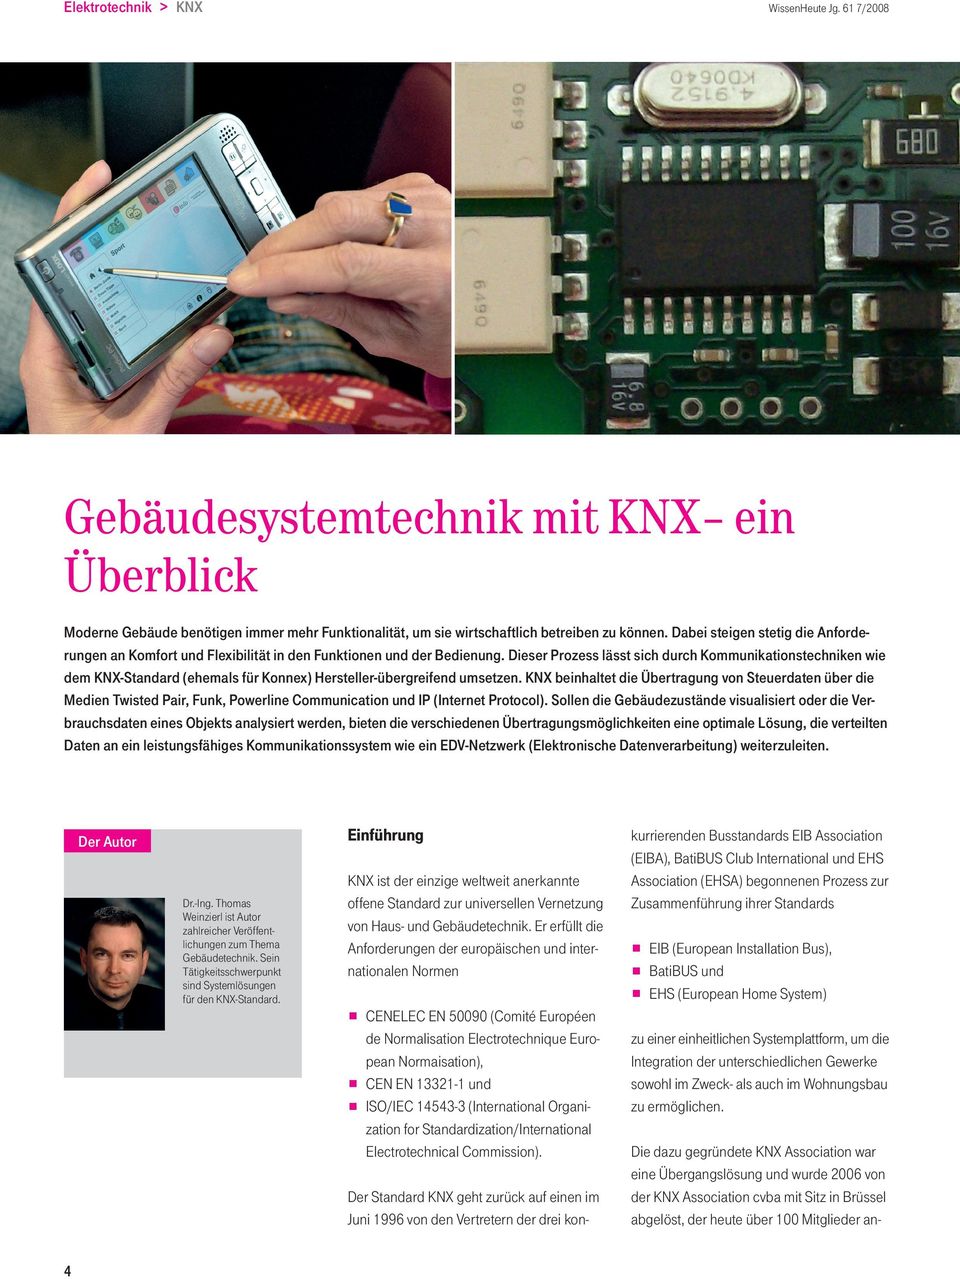 Dieser Prozess lässt sich durch Kommunikationstechniken wie dem KNX-Standard (ehemals für Konnex) Hersteller-übergreifend umsetzen.